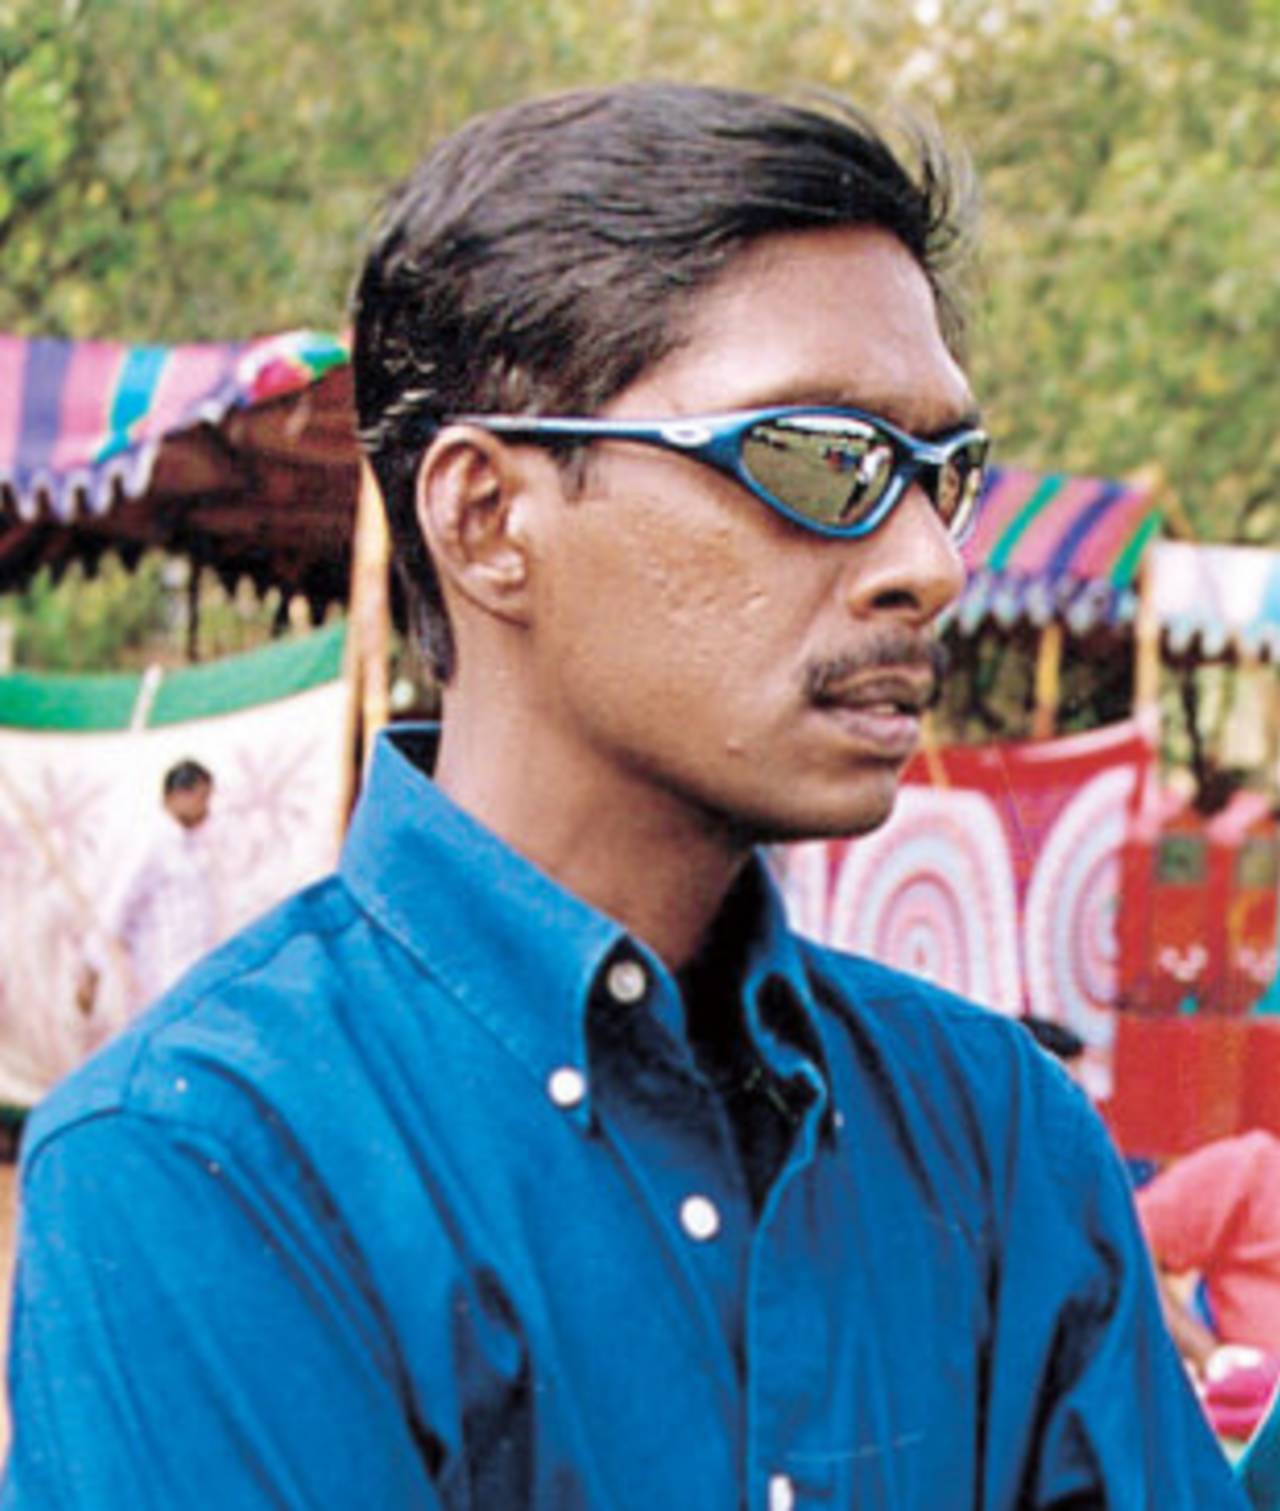 L Sivaramakrishnan in sunglasses, India, May 6, 2013